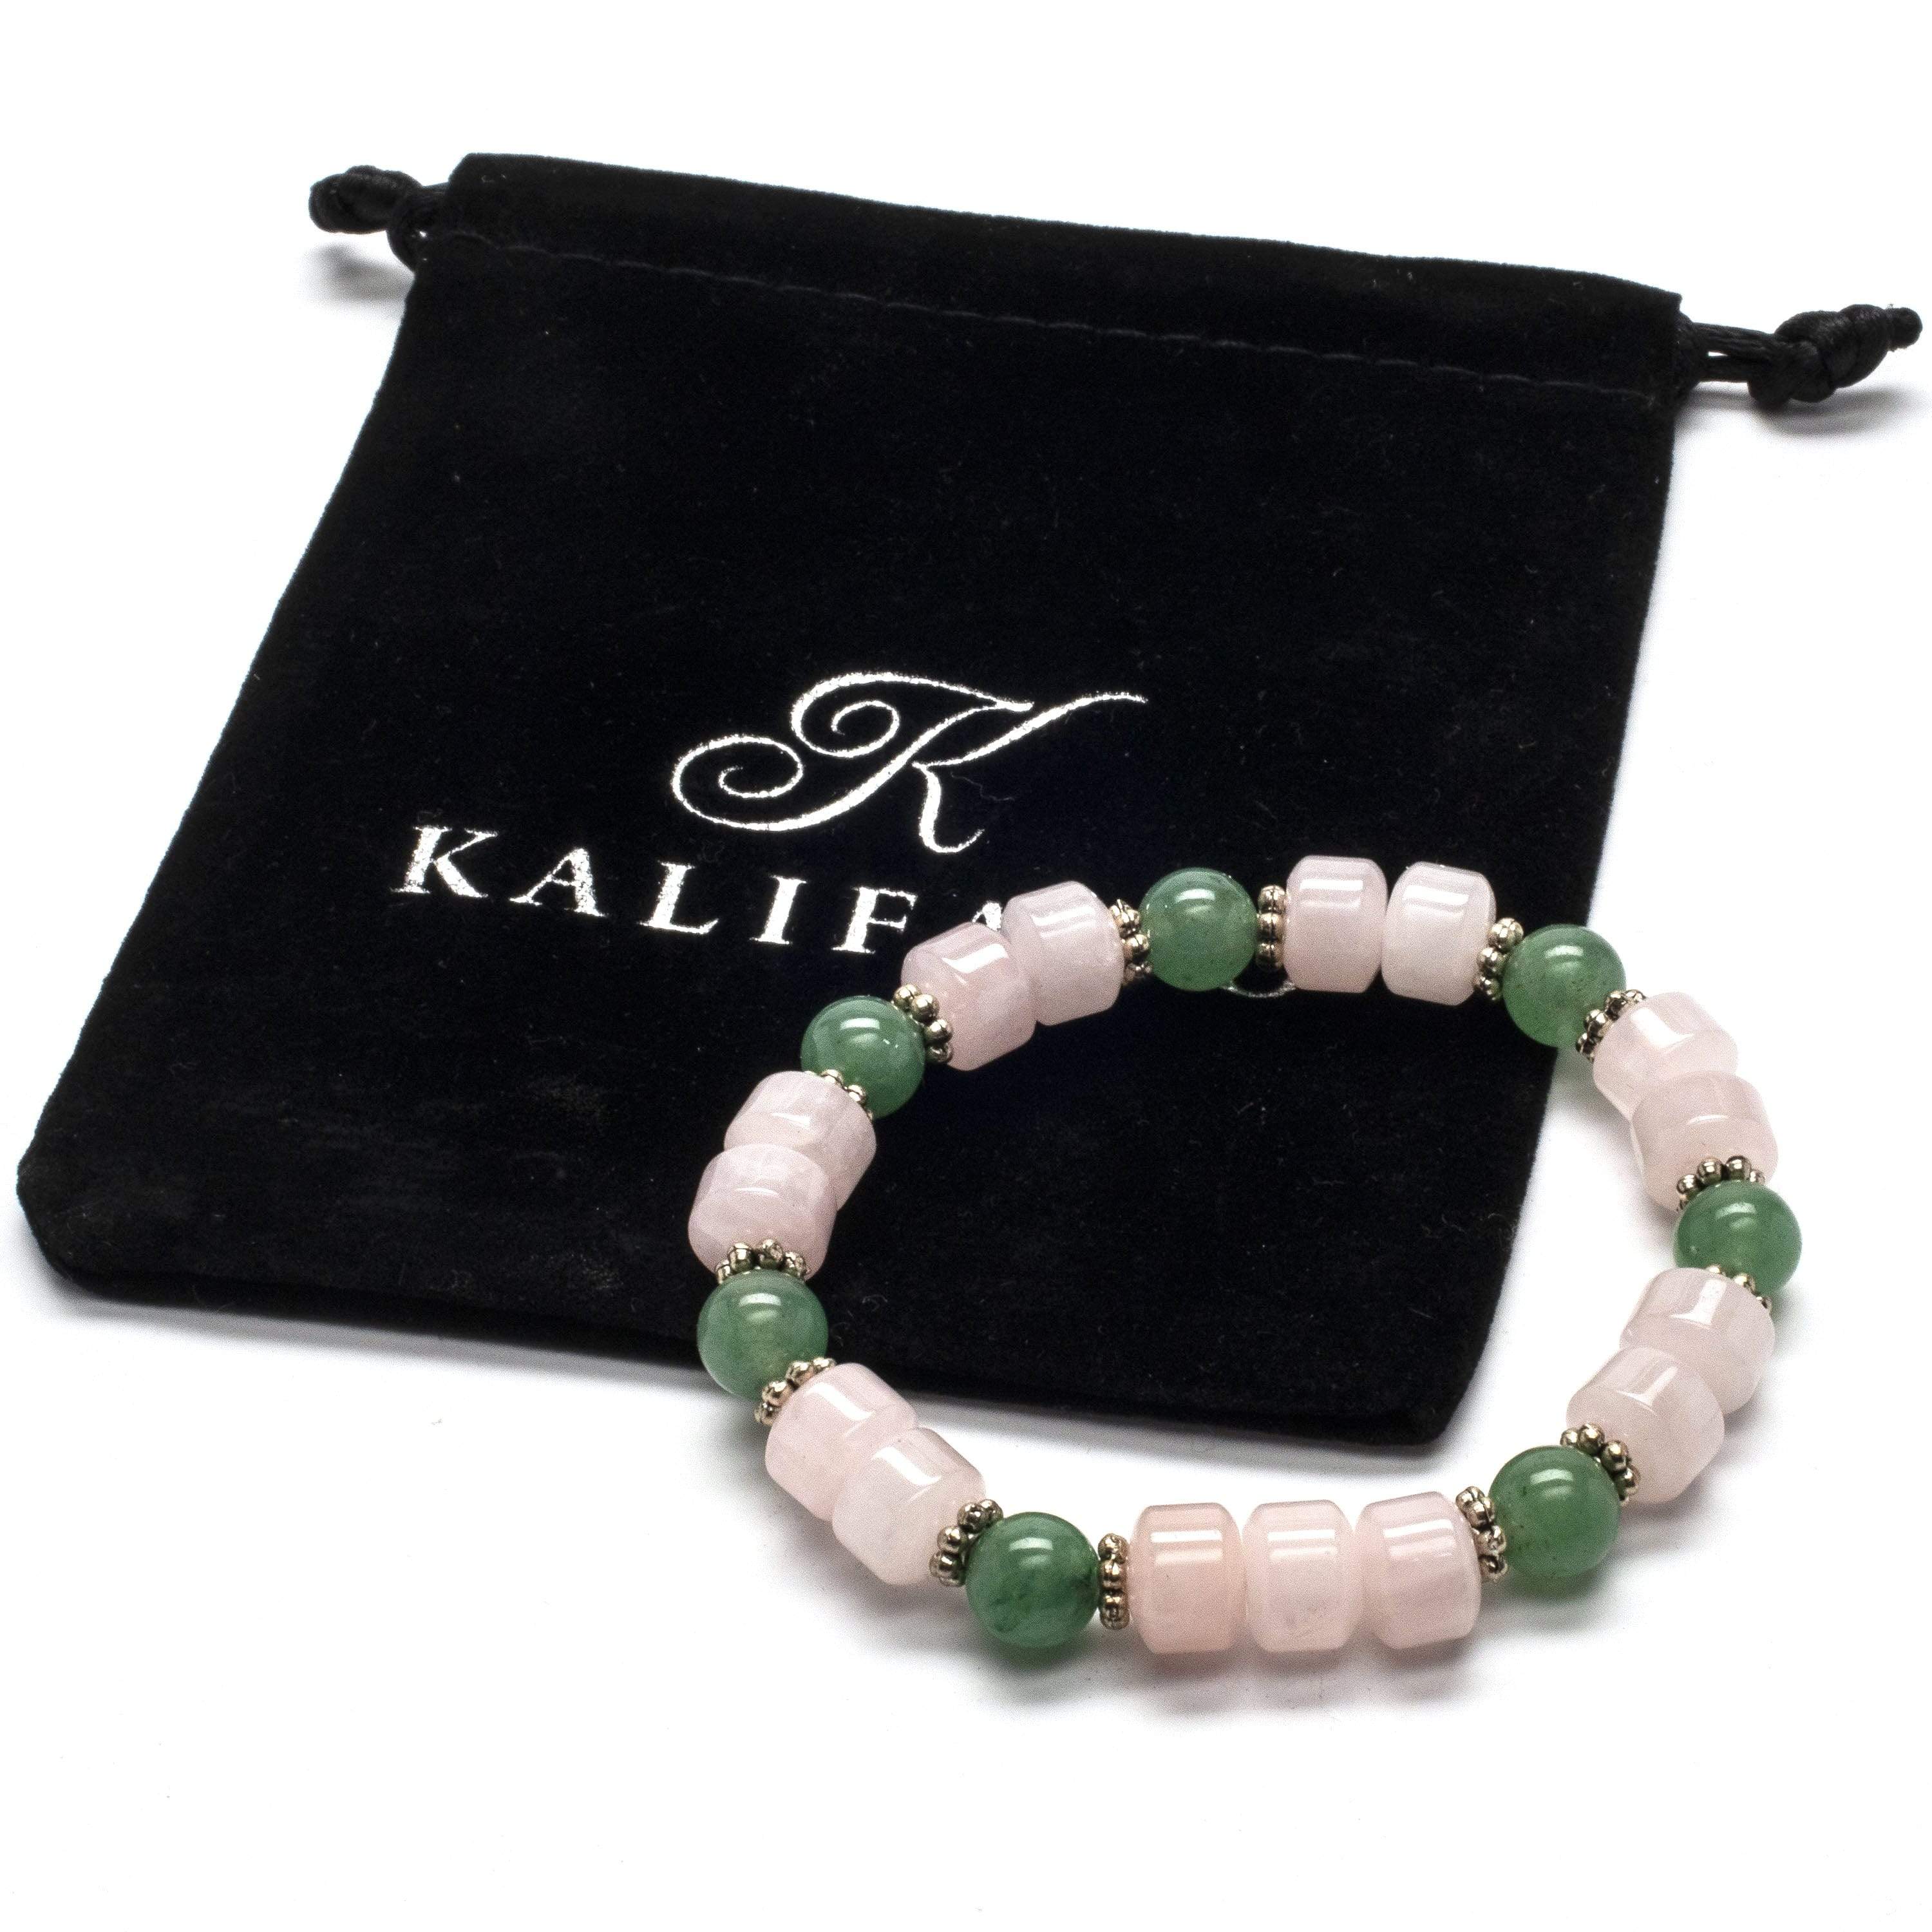 Kalifano Gemstone Bracelets Rose Quartz and Aventurine Gemstone Elastic Braceletwith Crystal Accent Beads WHITE-BGP-010